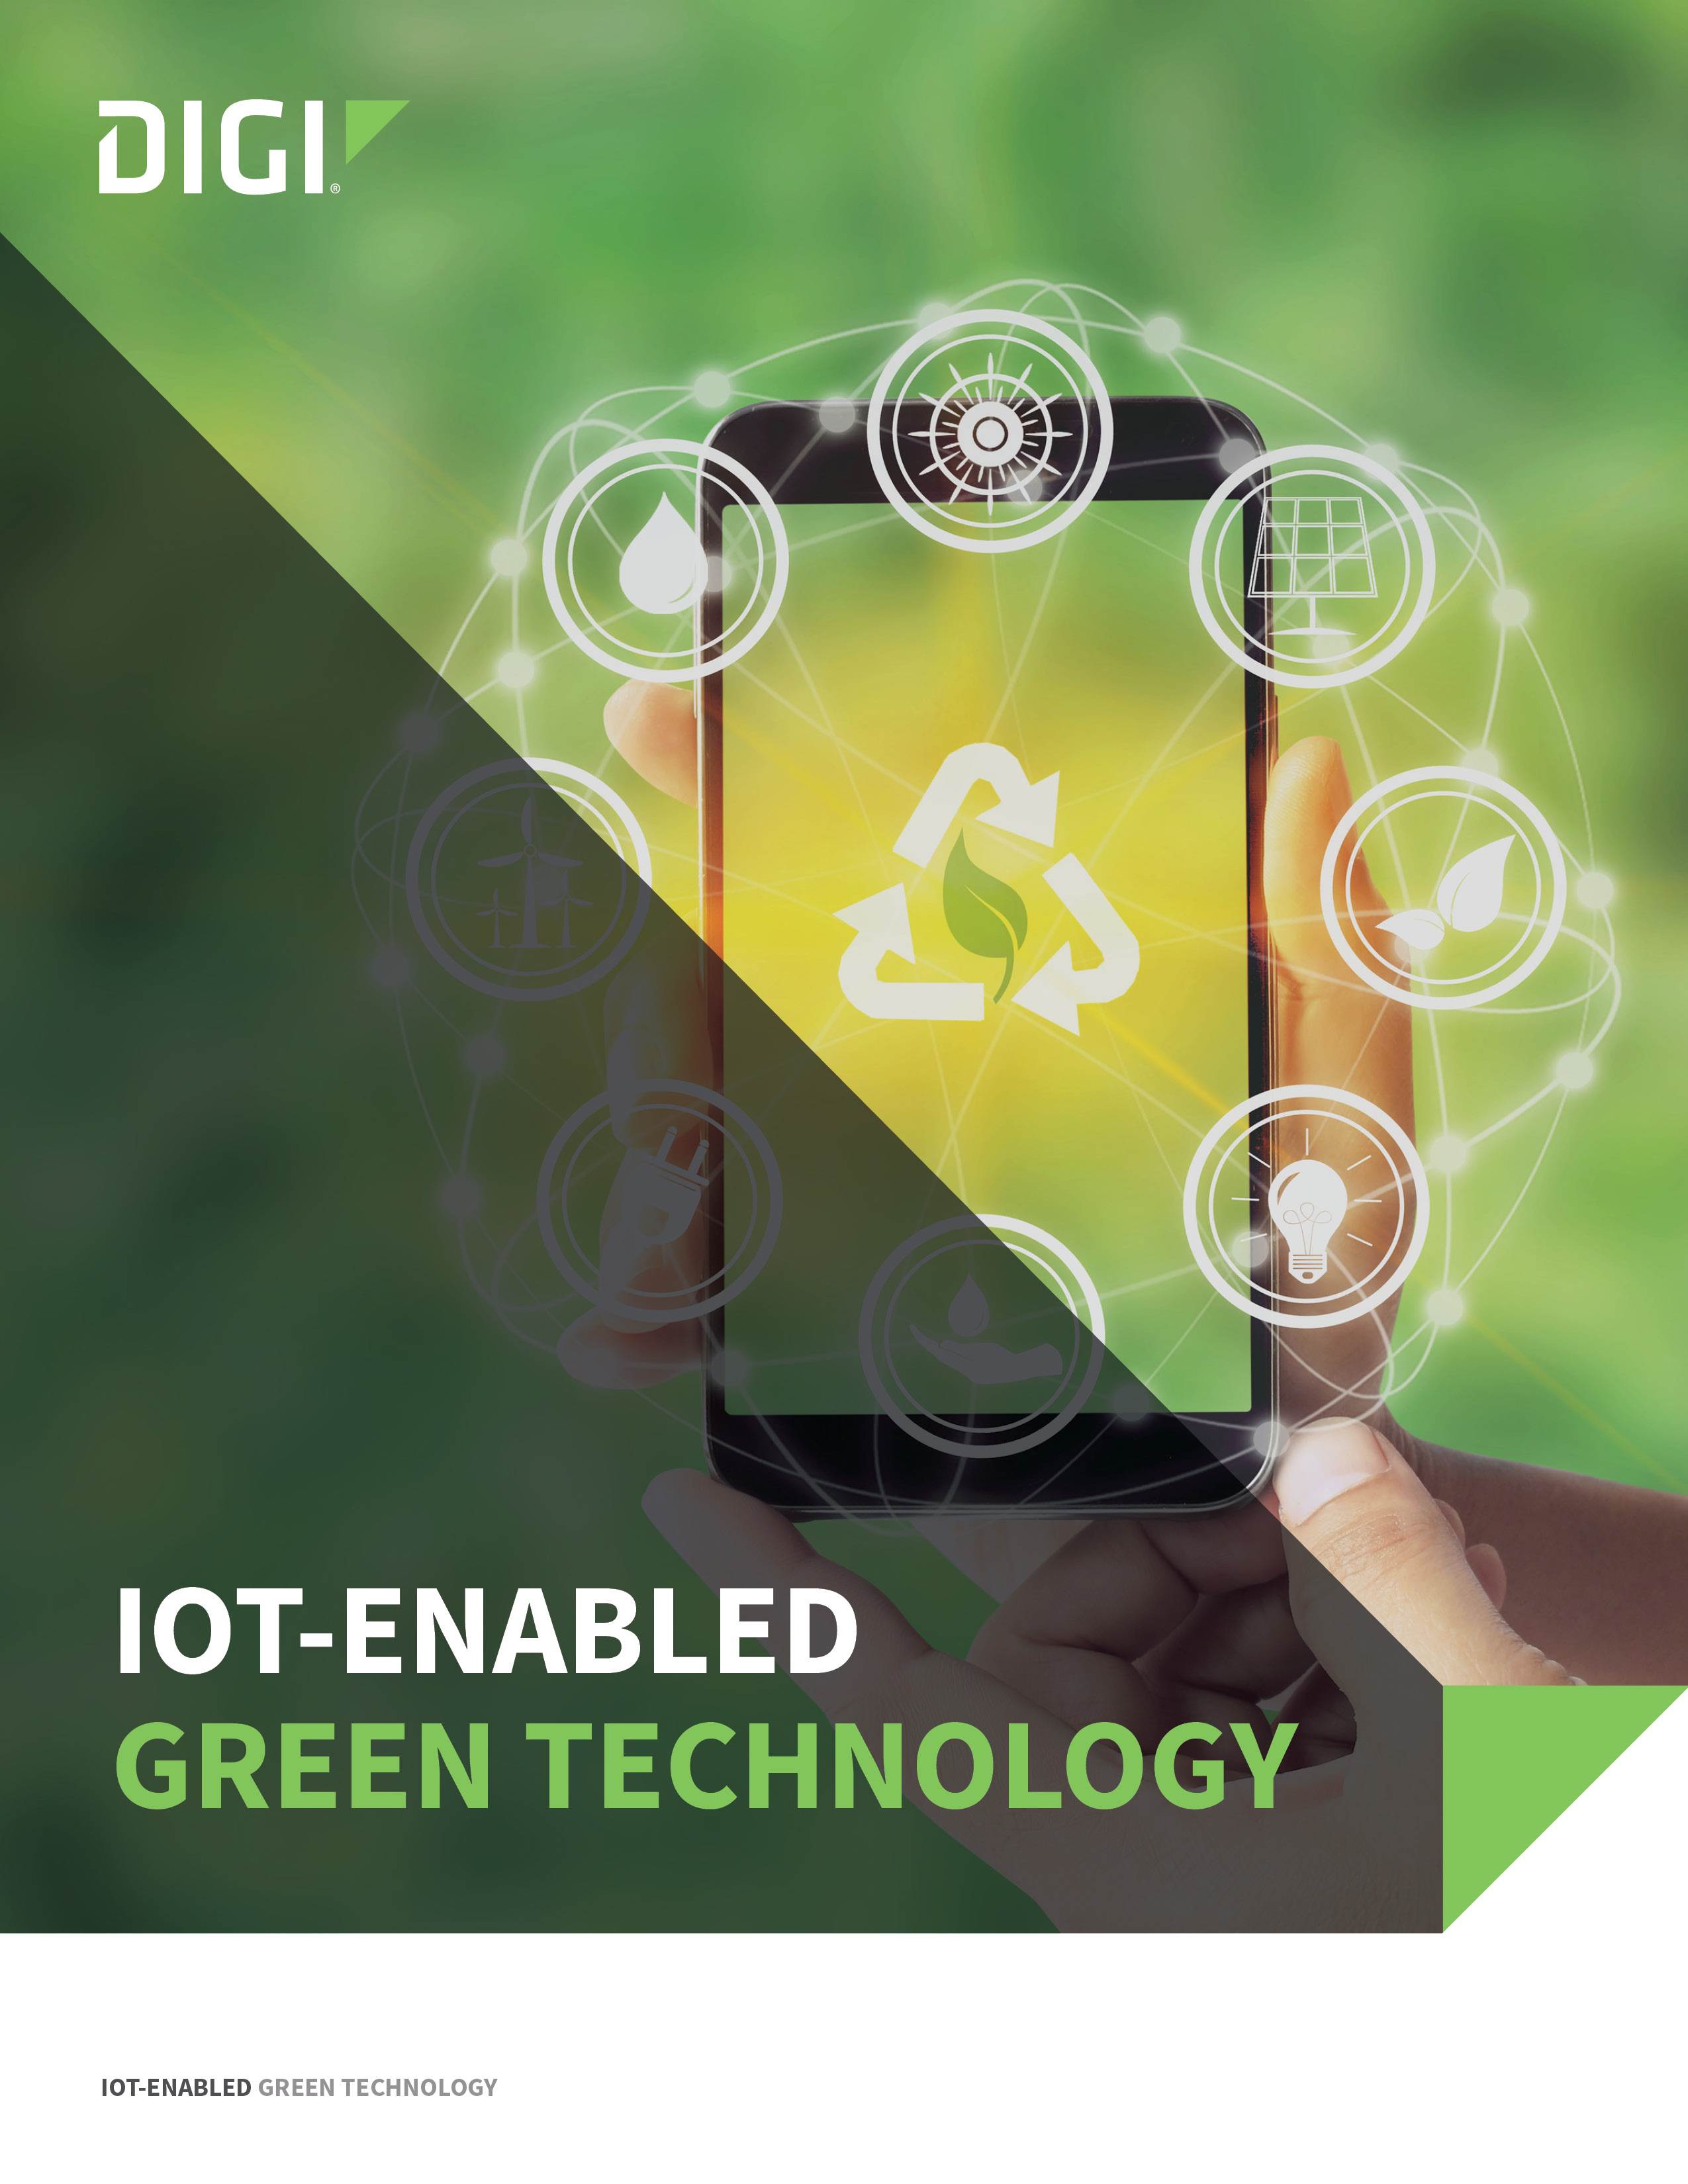 IoT-Page de couverture de la technologie verte activée